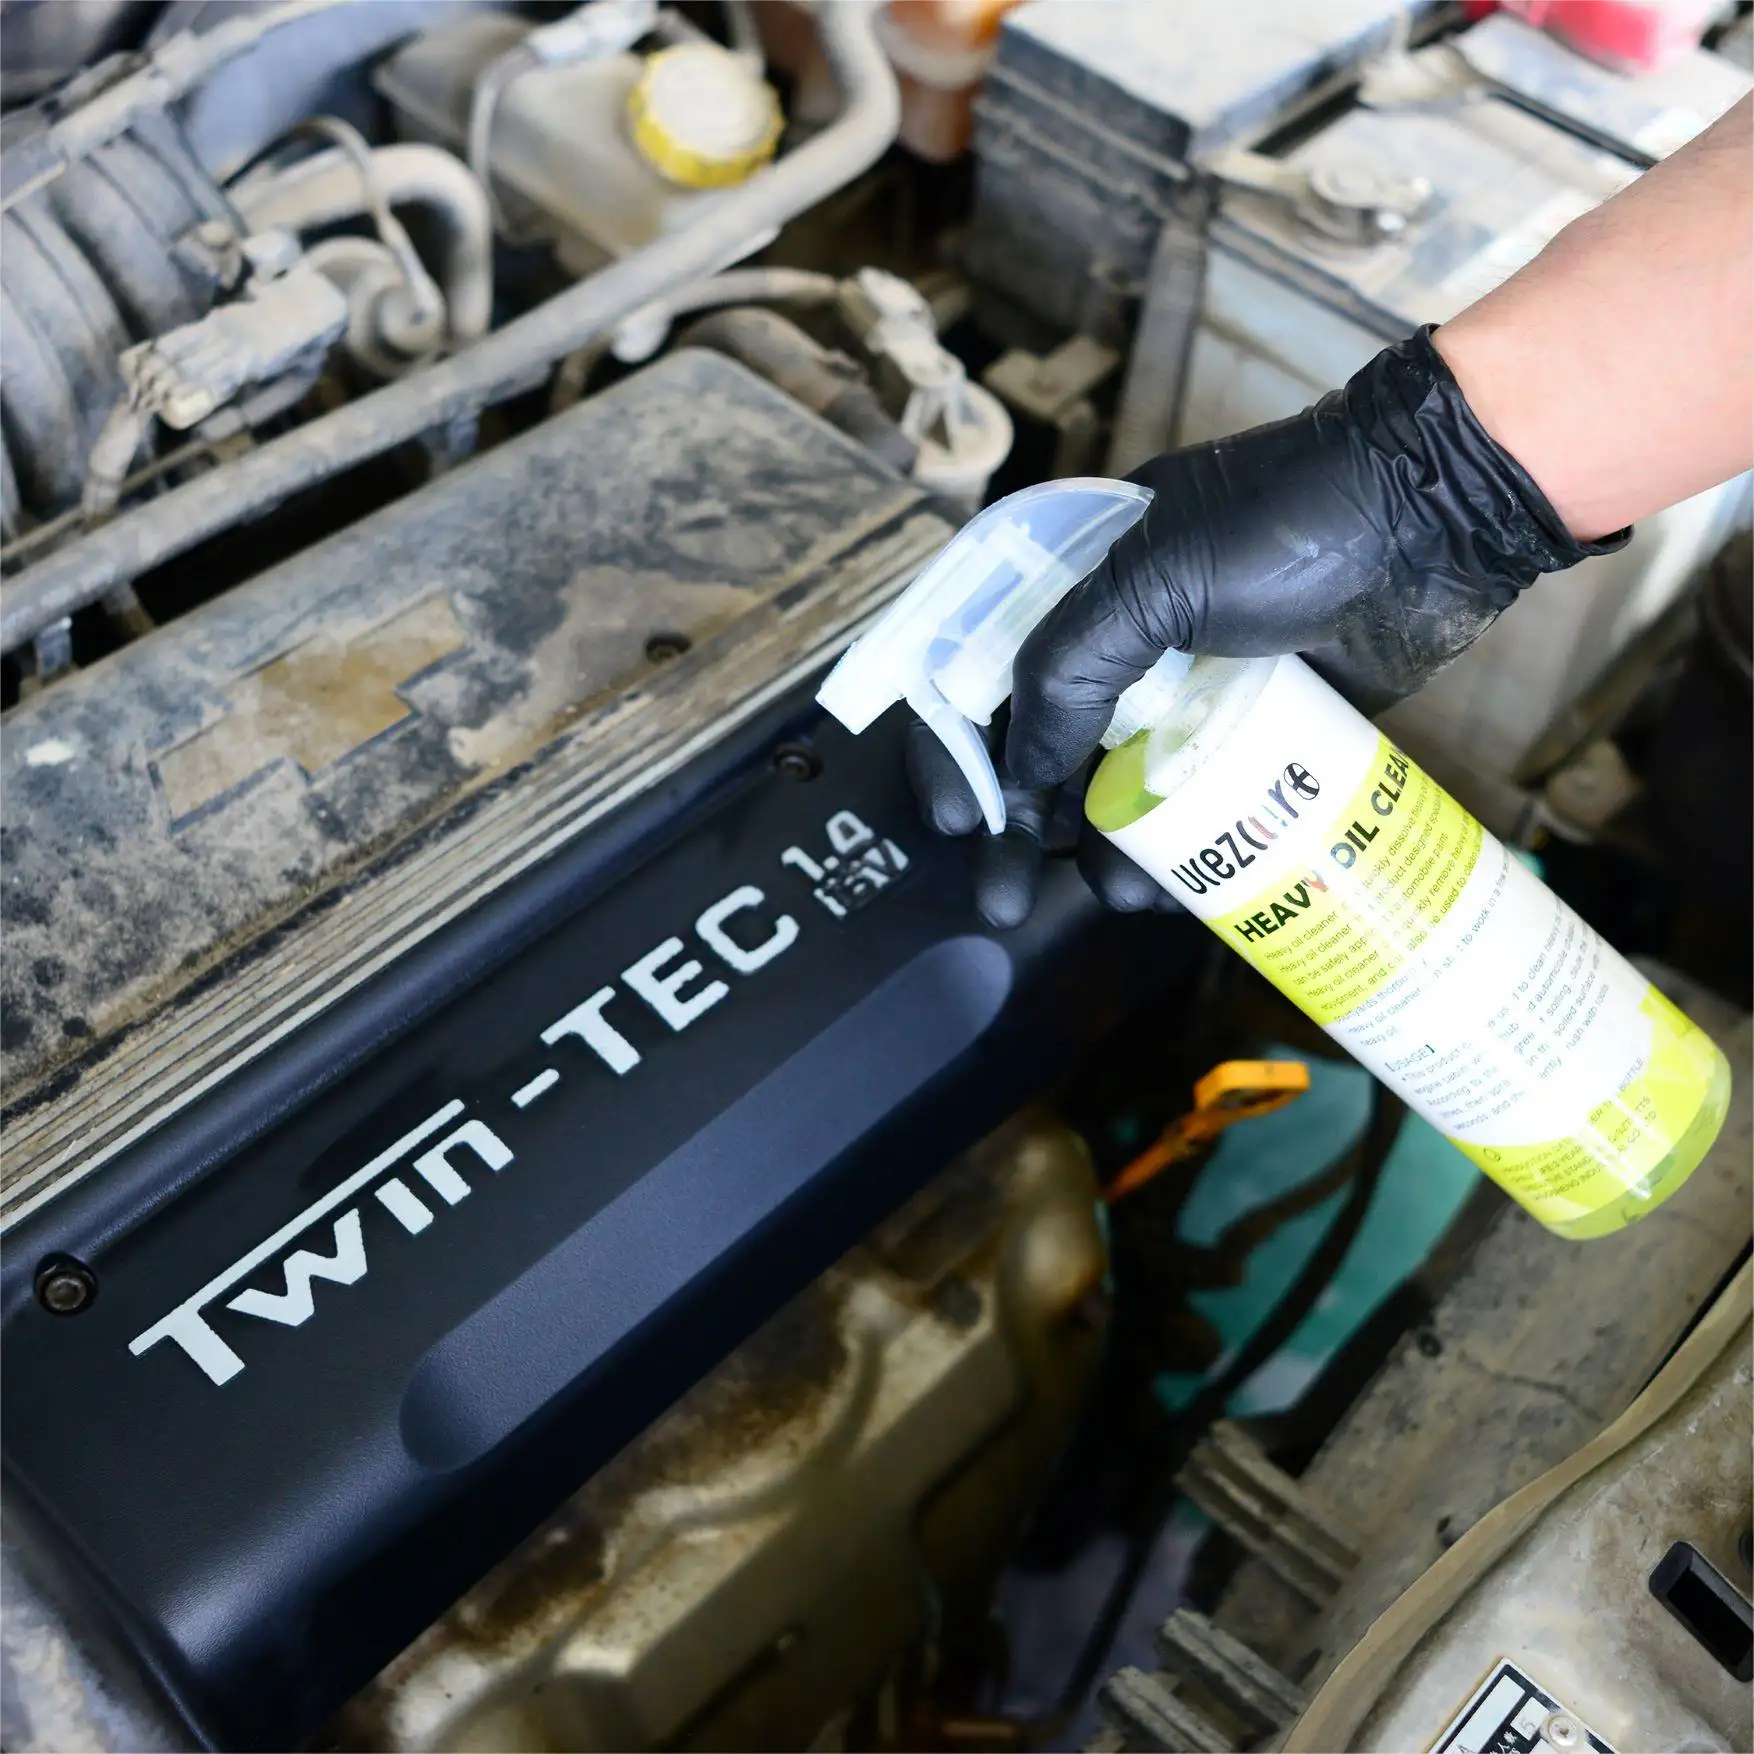 Sıcak UCEZCAR + konsantre araba motoru yağ çözücü ve toz temiz kimyasal sıvı köpük sprey lastik temizleyici sprey